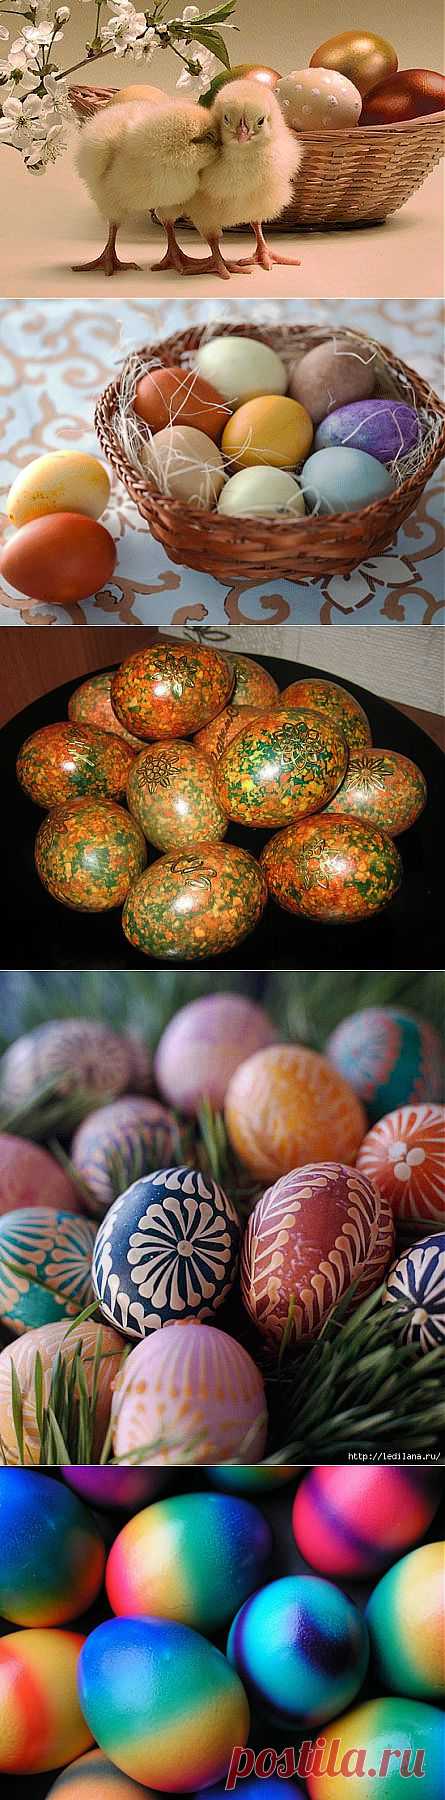 О дарении крашеных яиц на Пасху. Традиция красить яйца на Пасху. | Познавательный сайт ,,1000 мелочей"